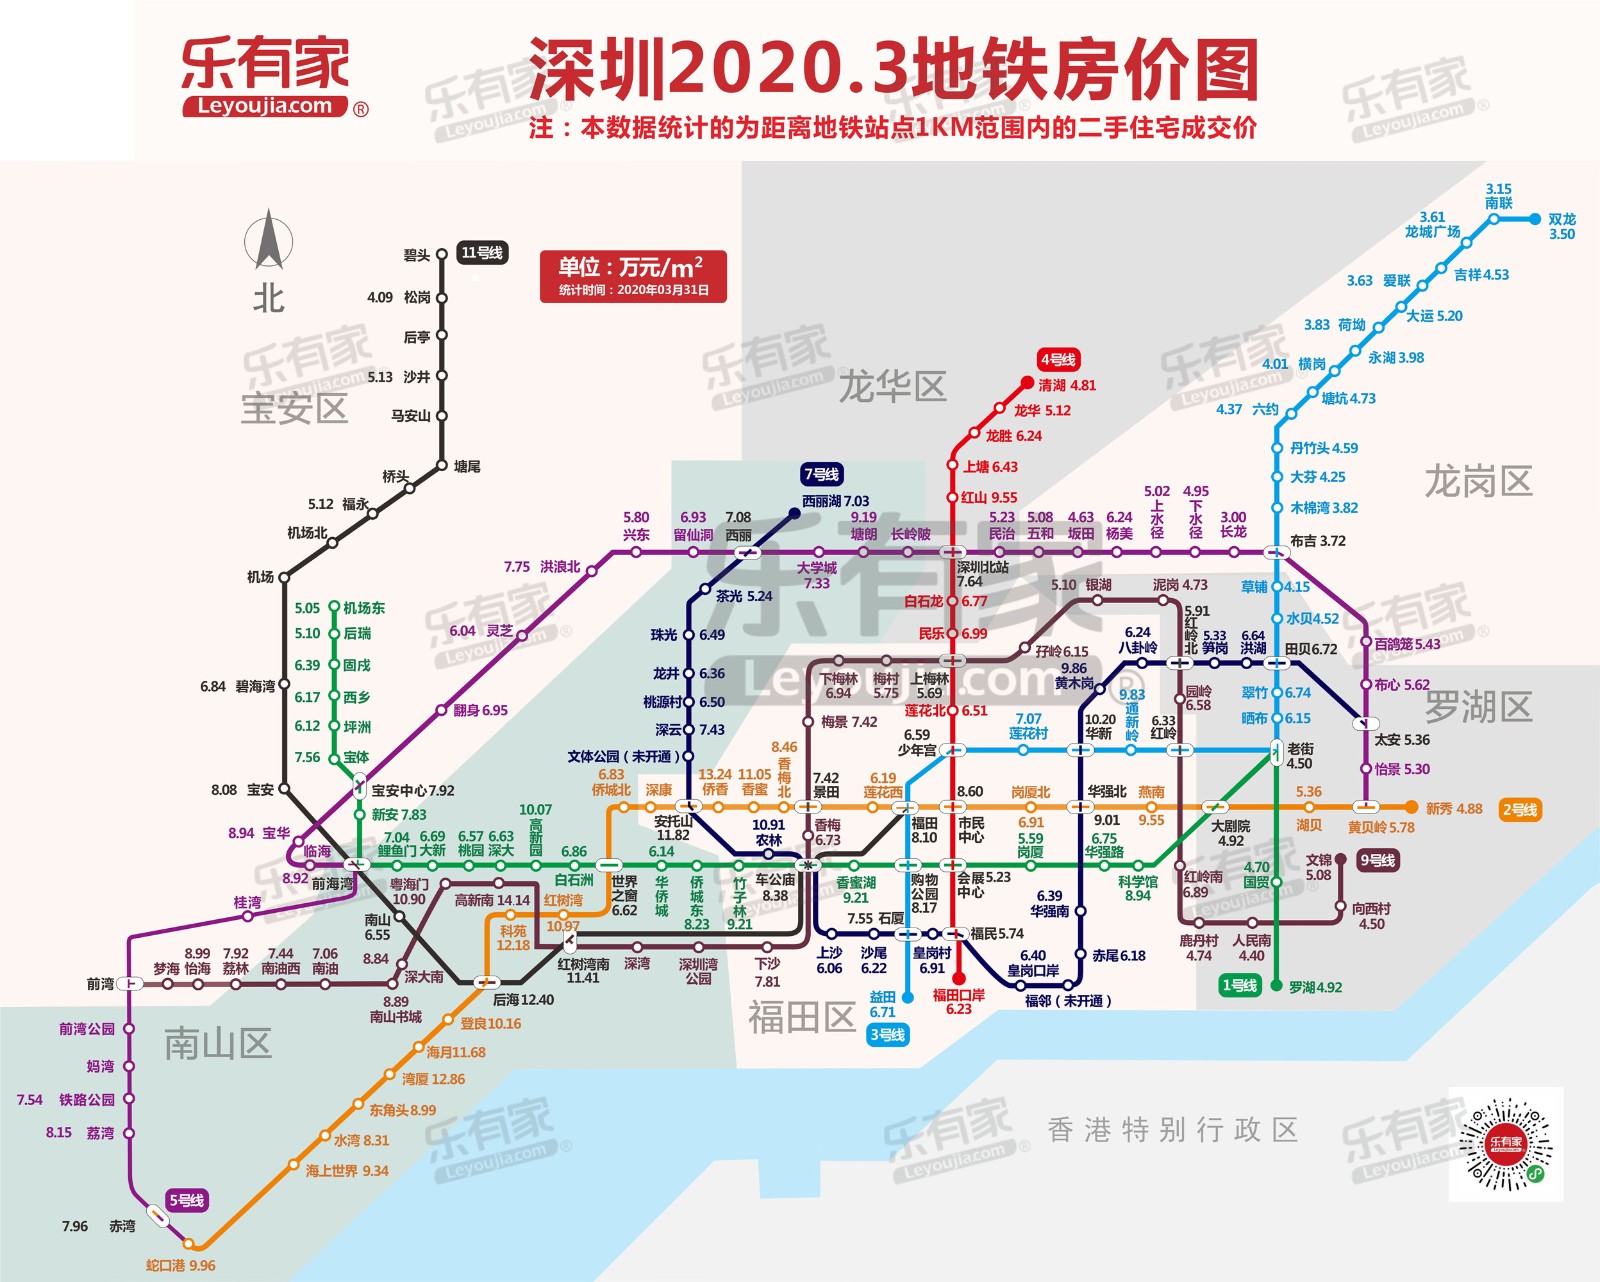 深圳217个地铁站点房价大数据告诉你!